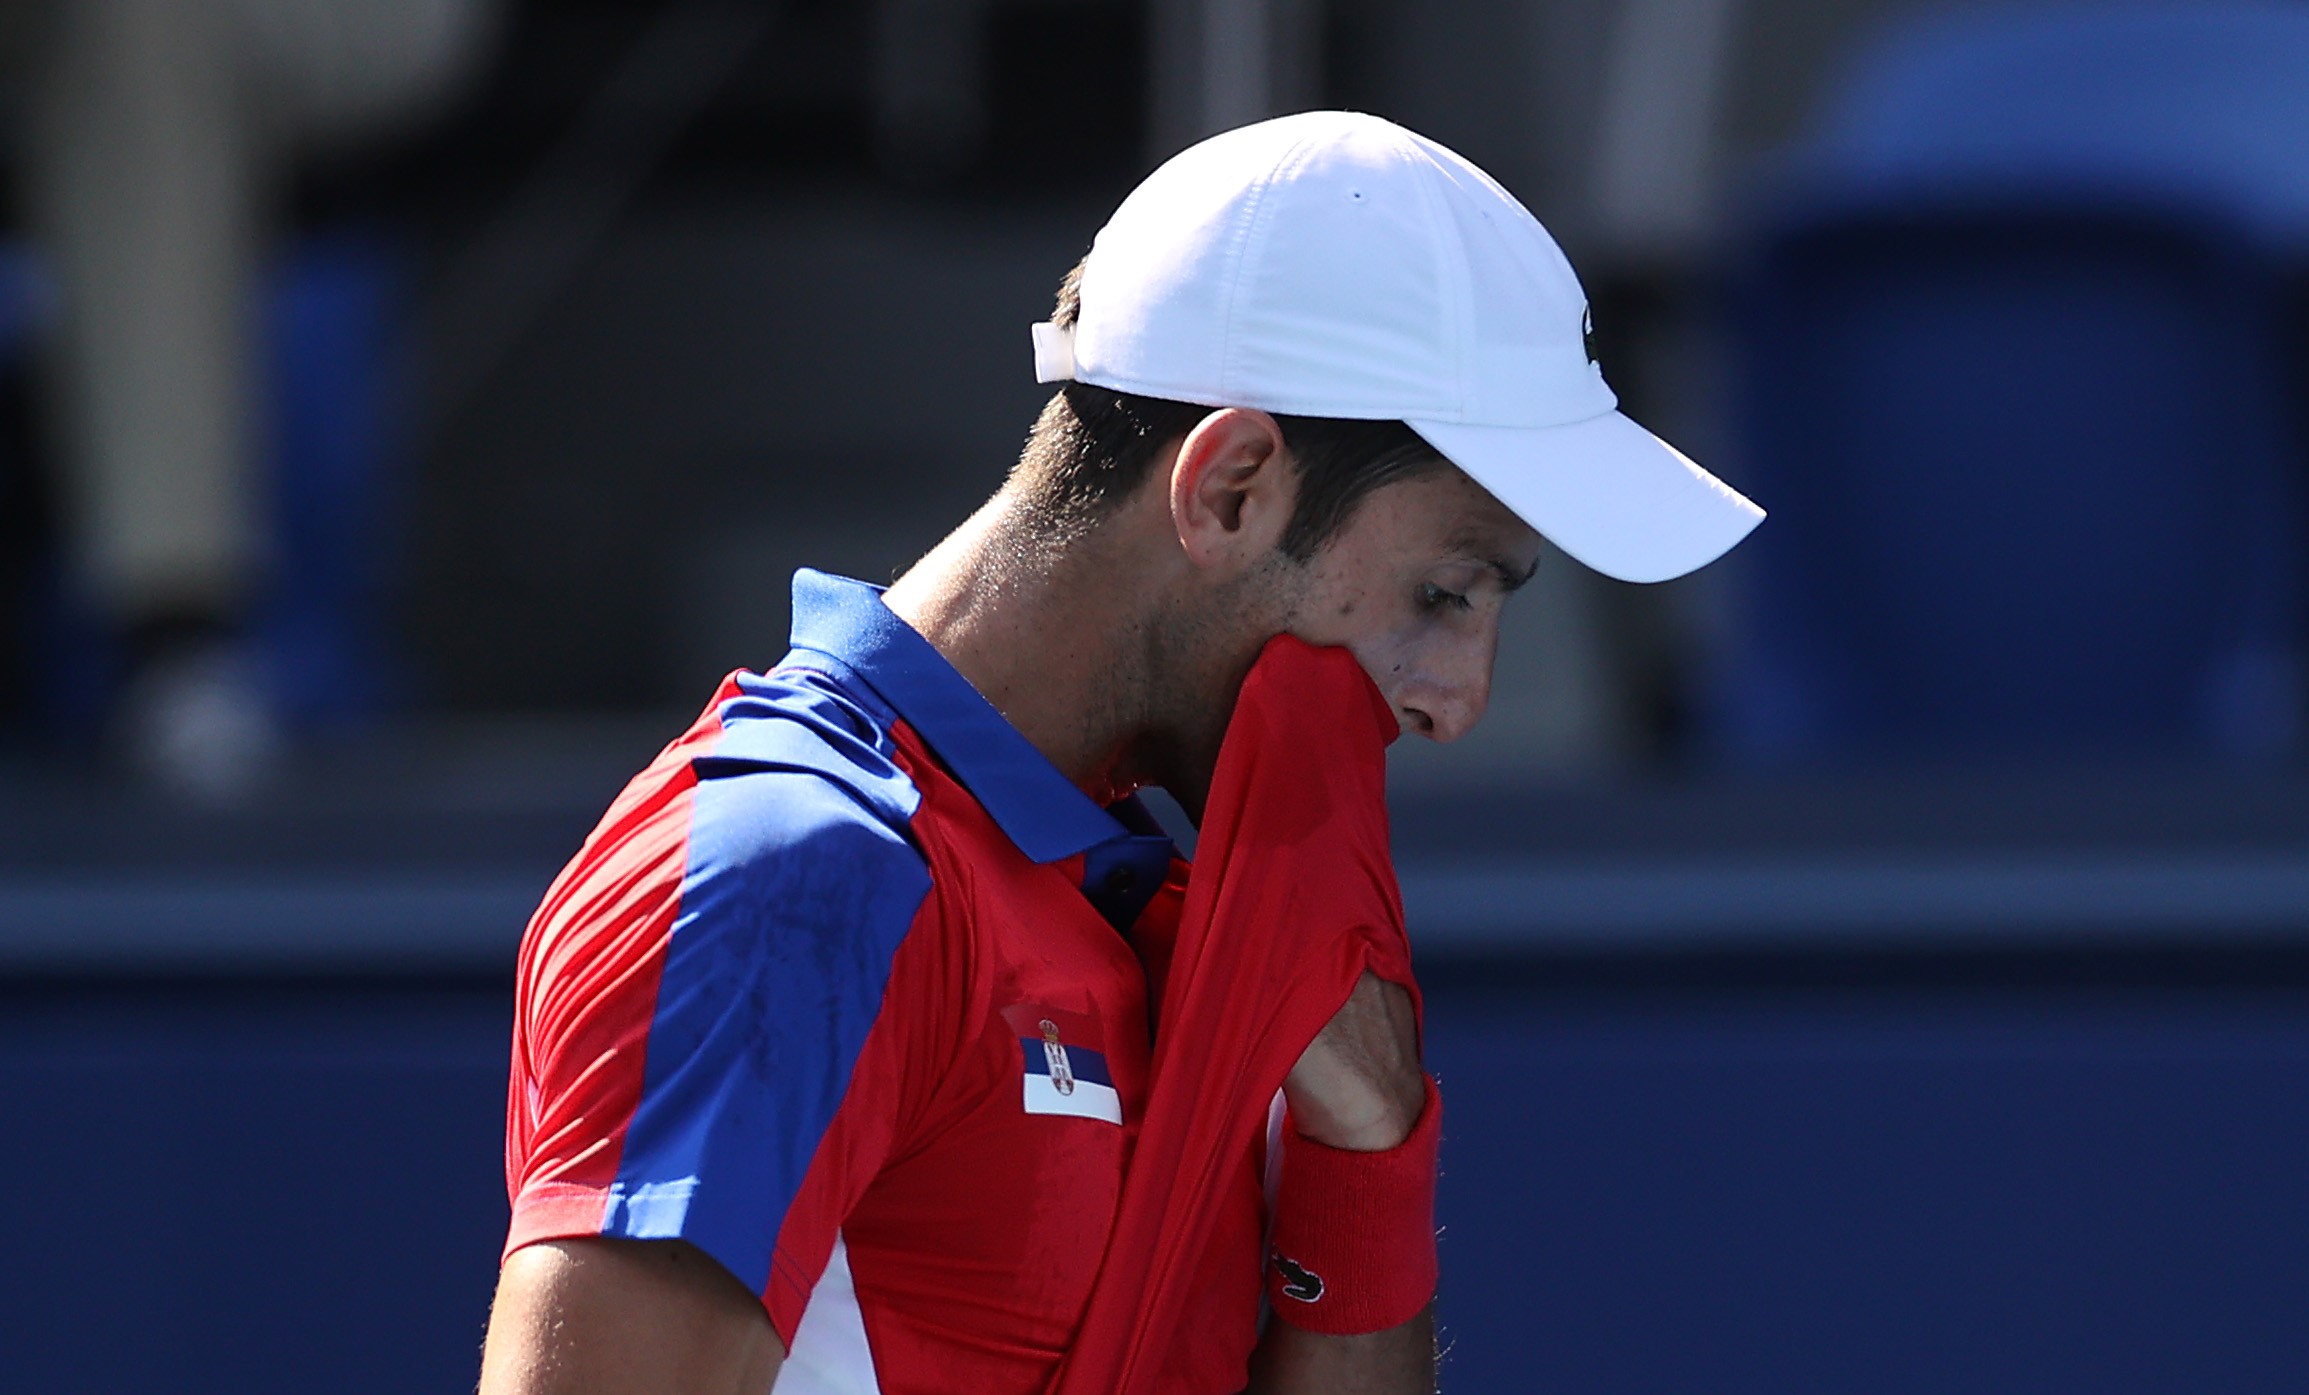 Final de coșmar pentru Novak Djokovic la Jocurile Olimpice. Sârbul a pierdut și medalia de bronz, la o zi după Golden Slam